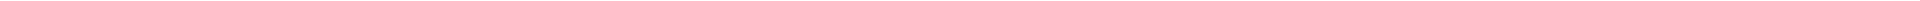 Виниры на зубы – цены в Казахстане Алматы, Астане (Нур-Султан), Усть-Каменогорске, Атырау, Уральск, Кокшетау в Казахстане, фото 19